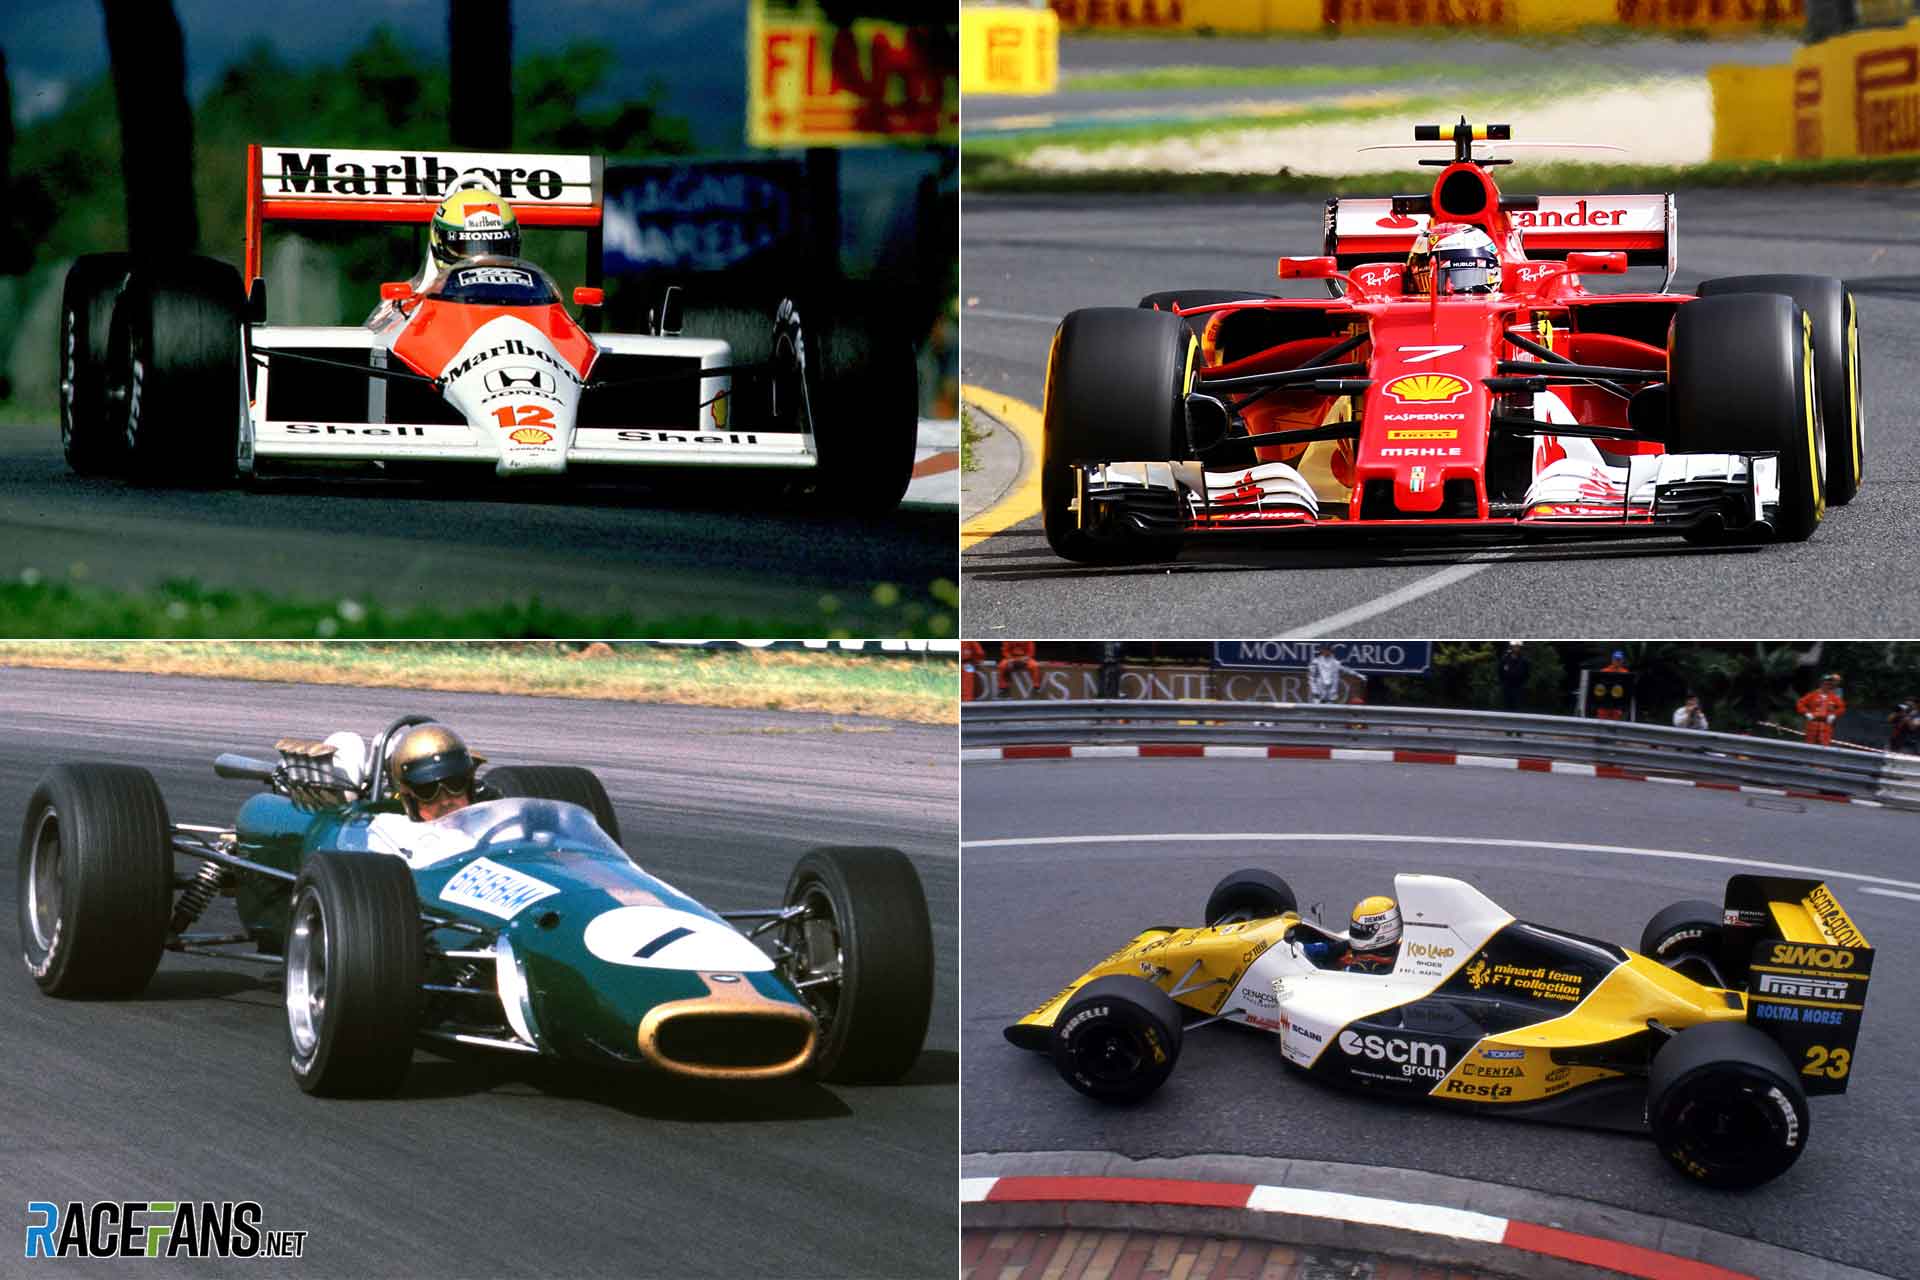 McLaren, Ferrari, Brabham and Minardi